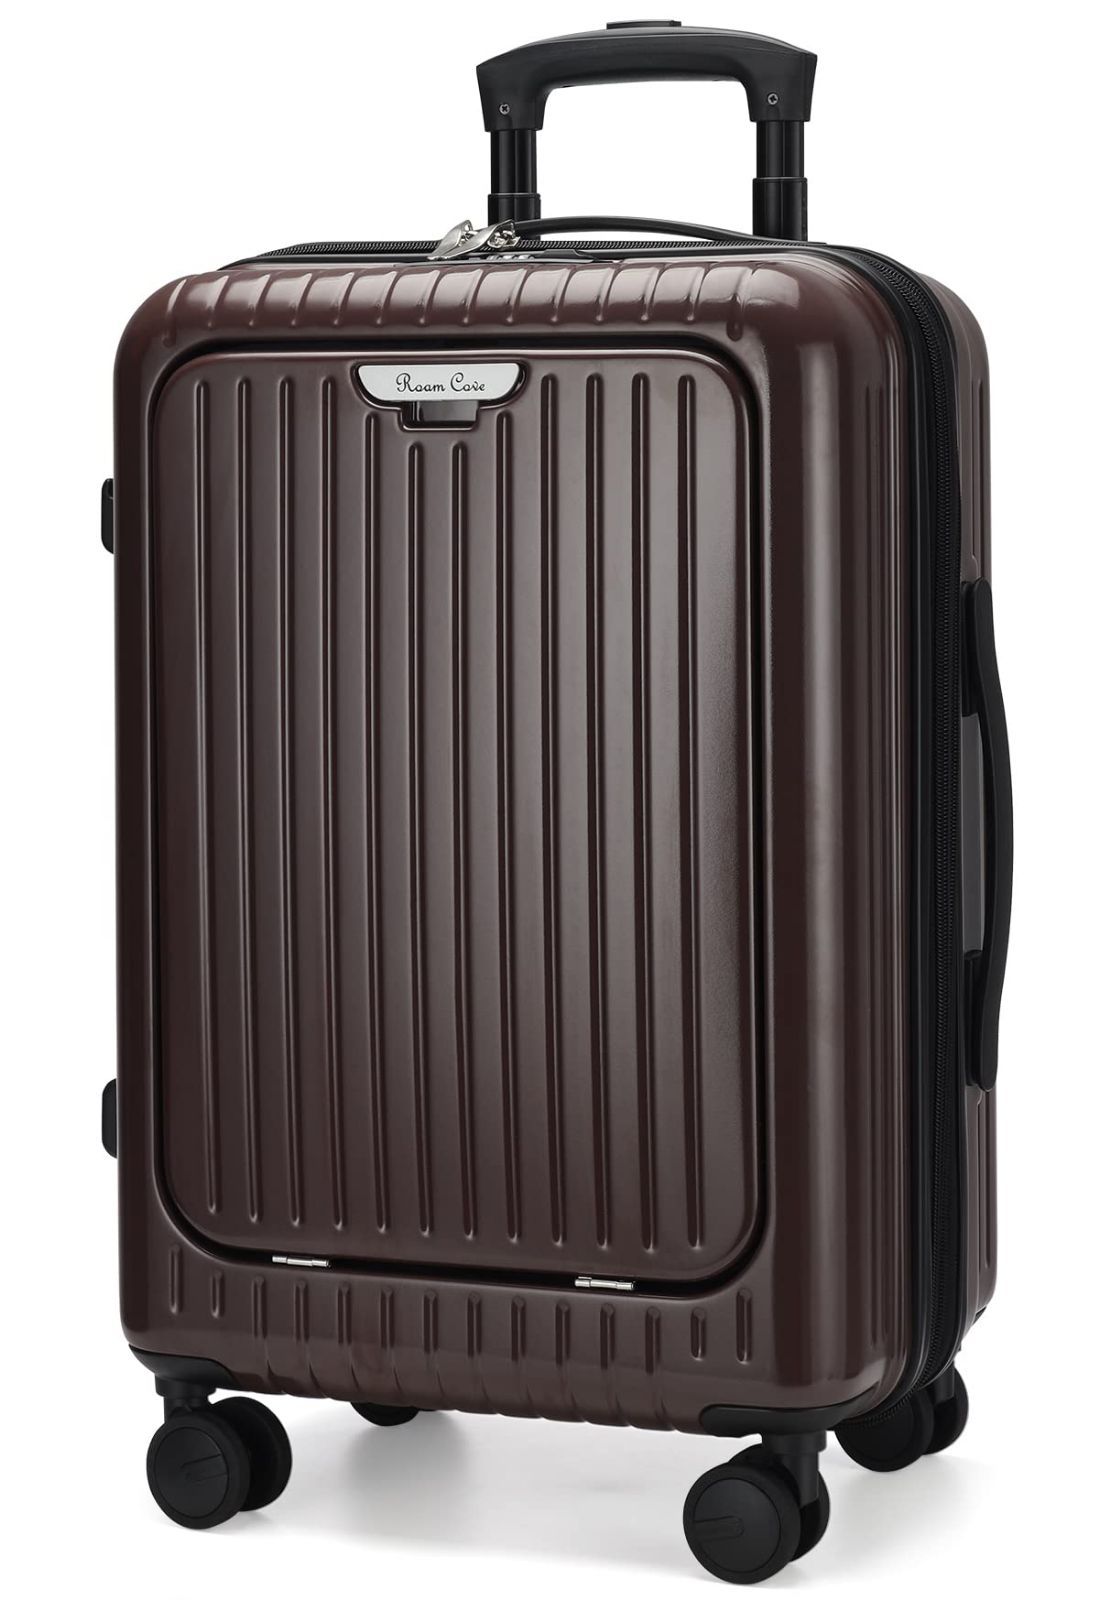 □Roam.Cove 拡張 スーツケース 軽量 機内持ち込み キャリーケース